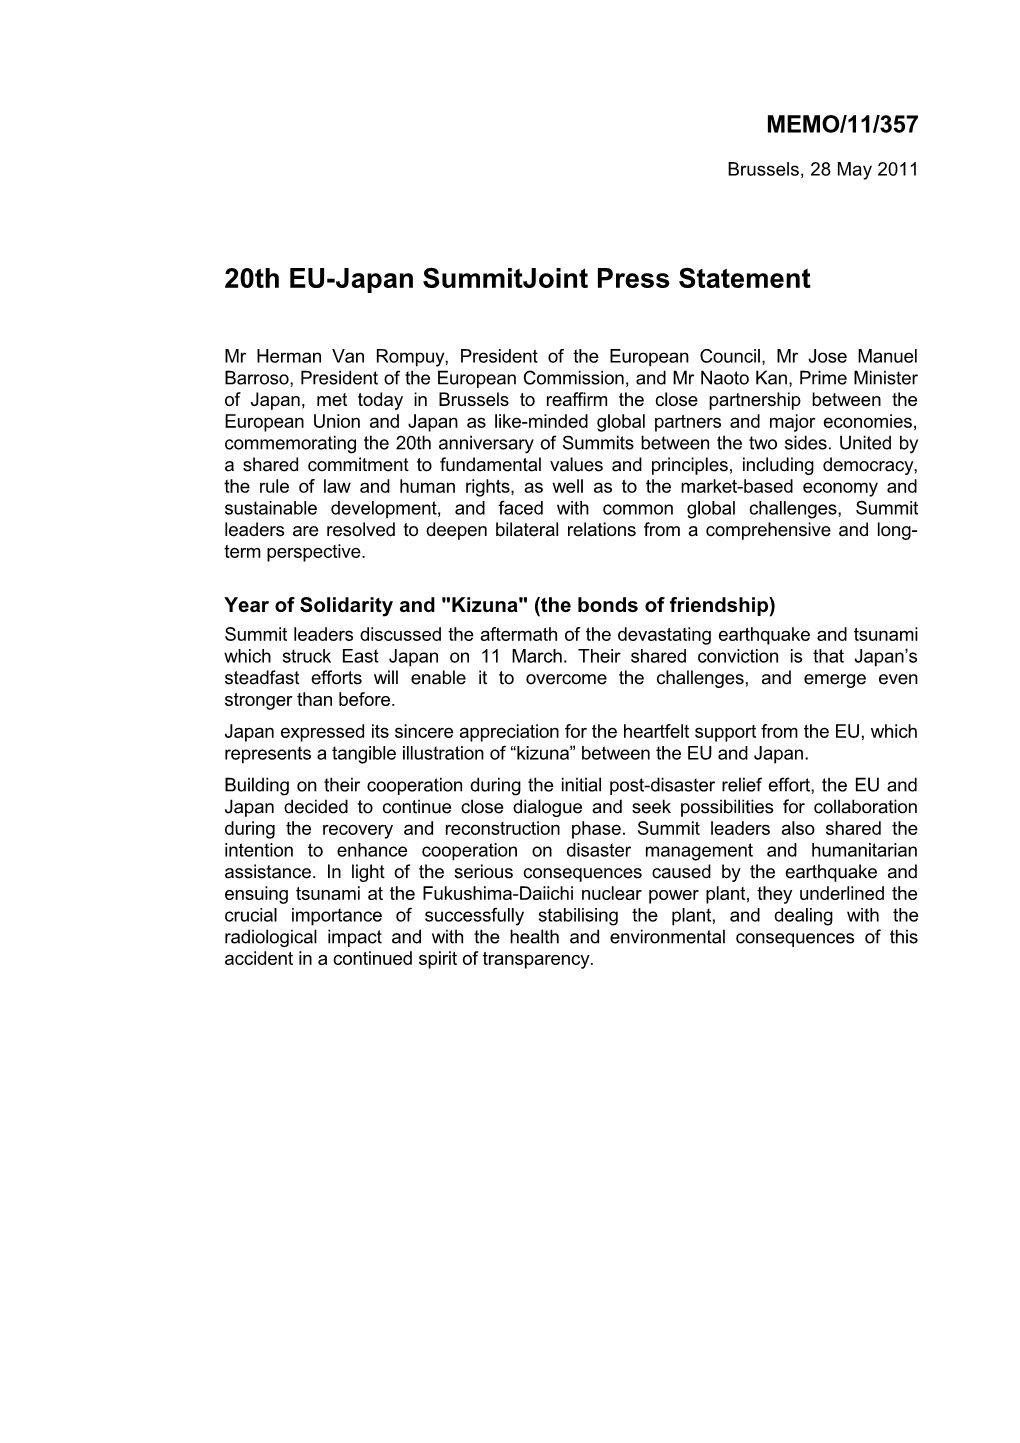 20Th EU-Japan Summitjoint Press Statement